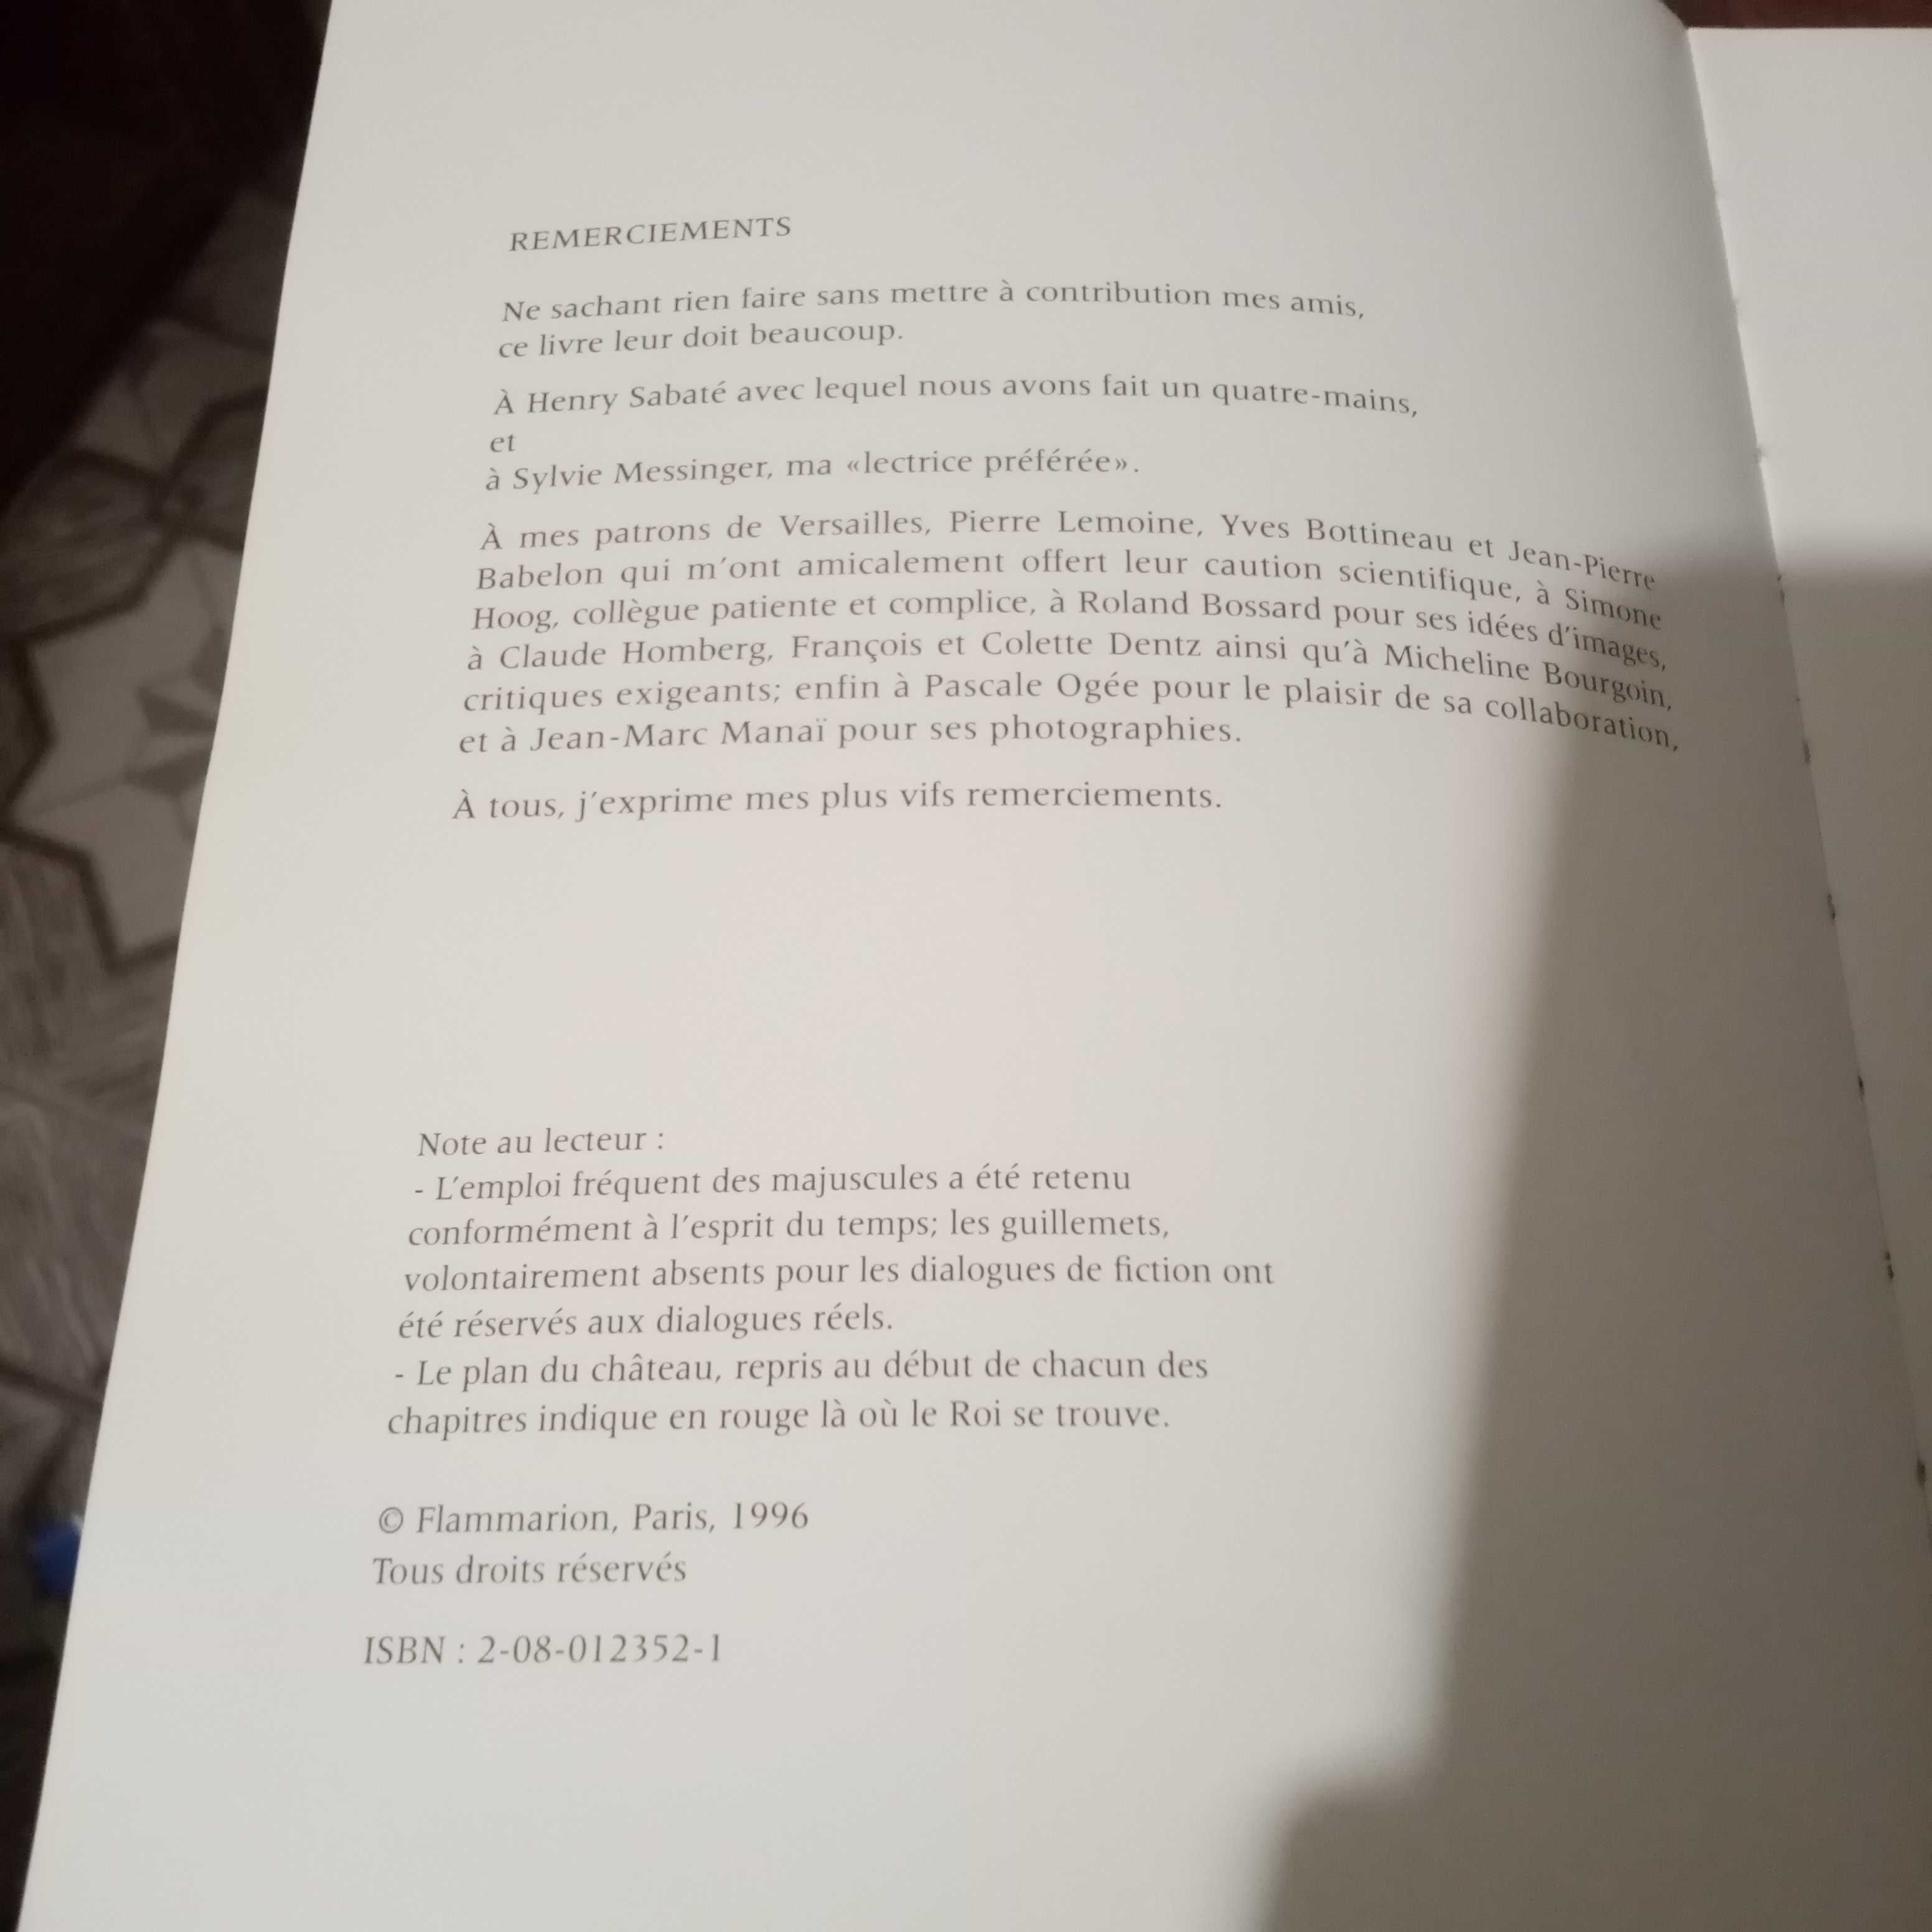 Книга "Версальський триумфатор"  на французском языке Paris 1996г.